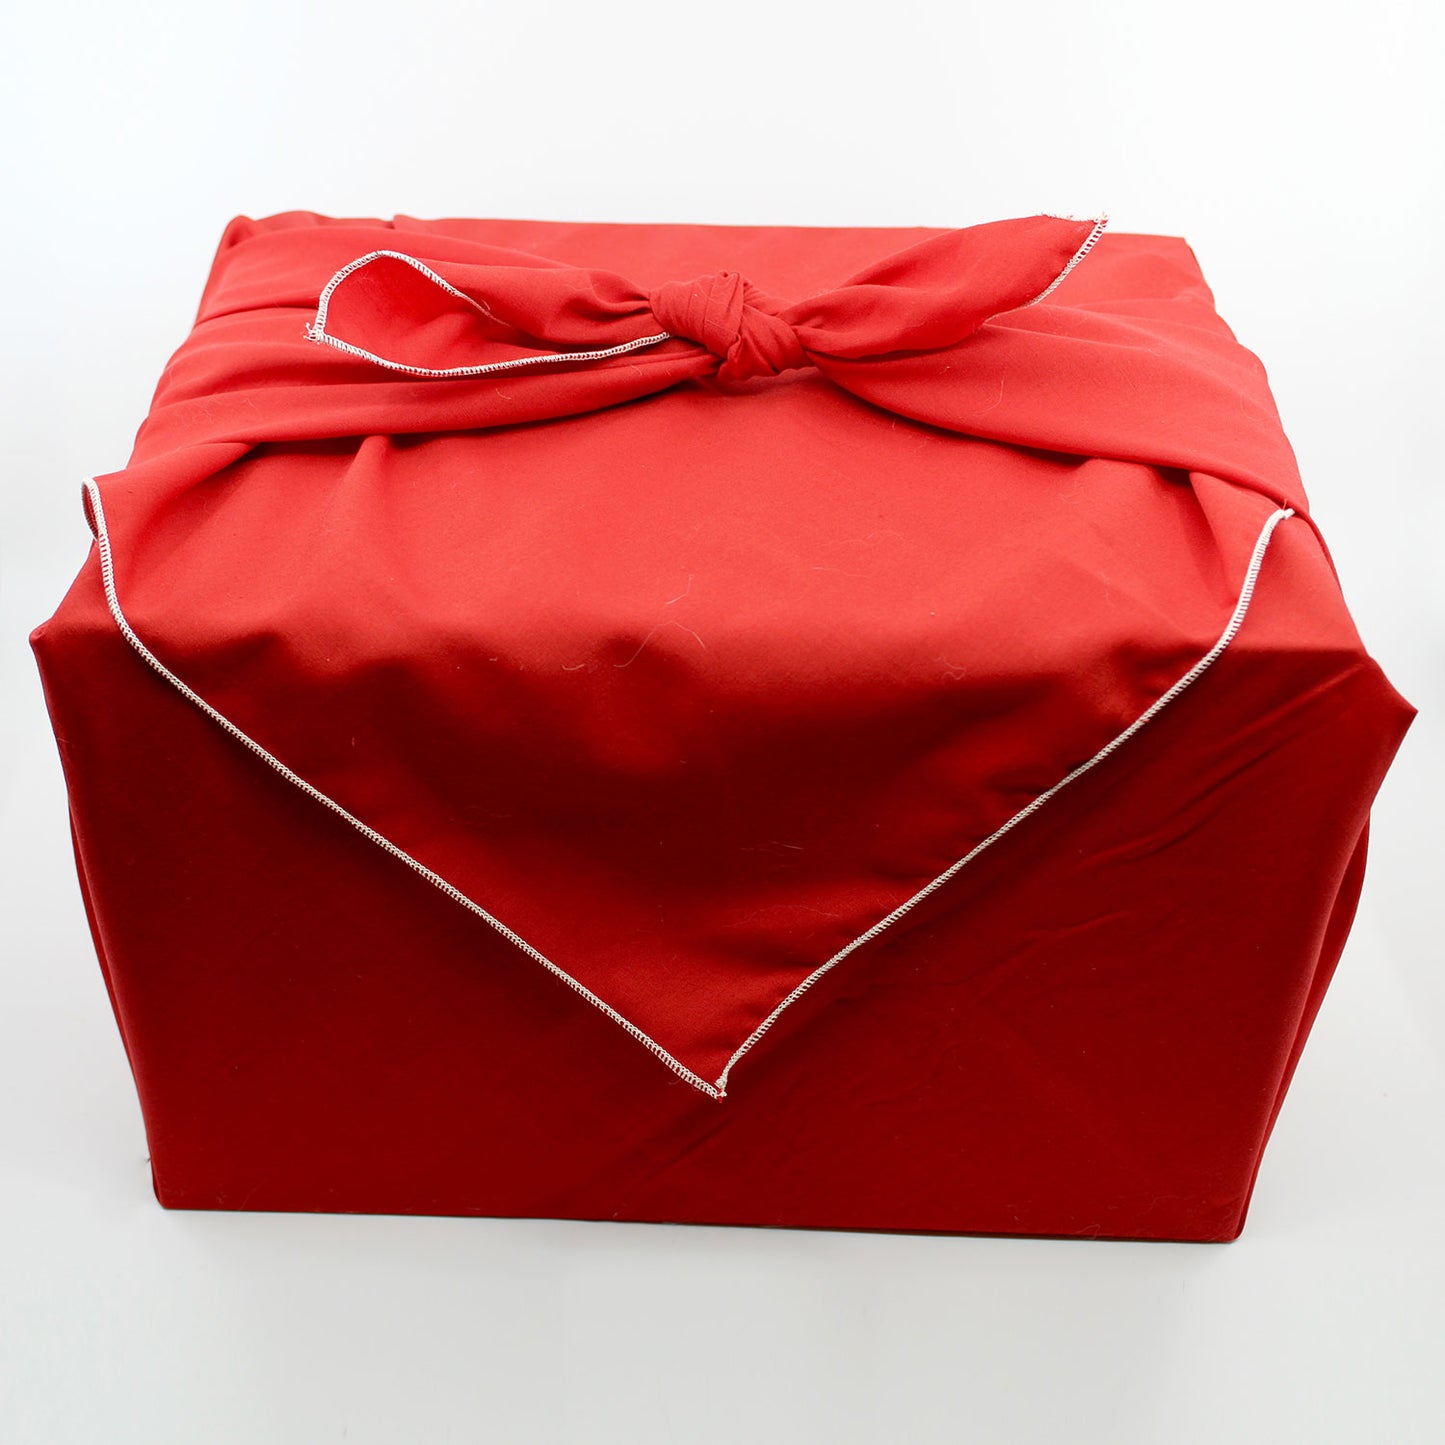 Upcycled Reusable Gift Wrap (Furoshiki)